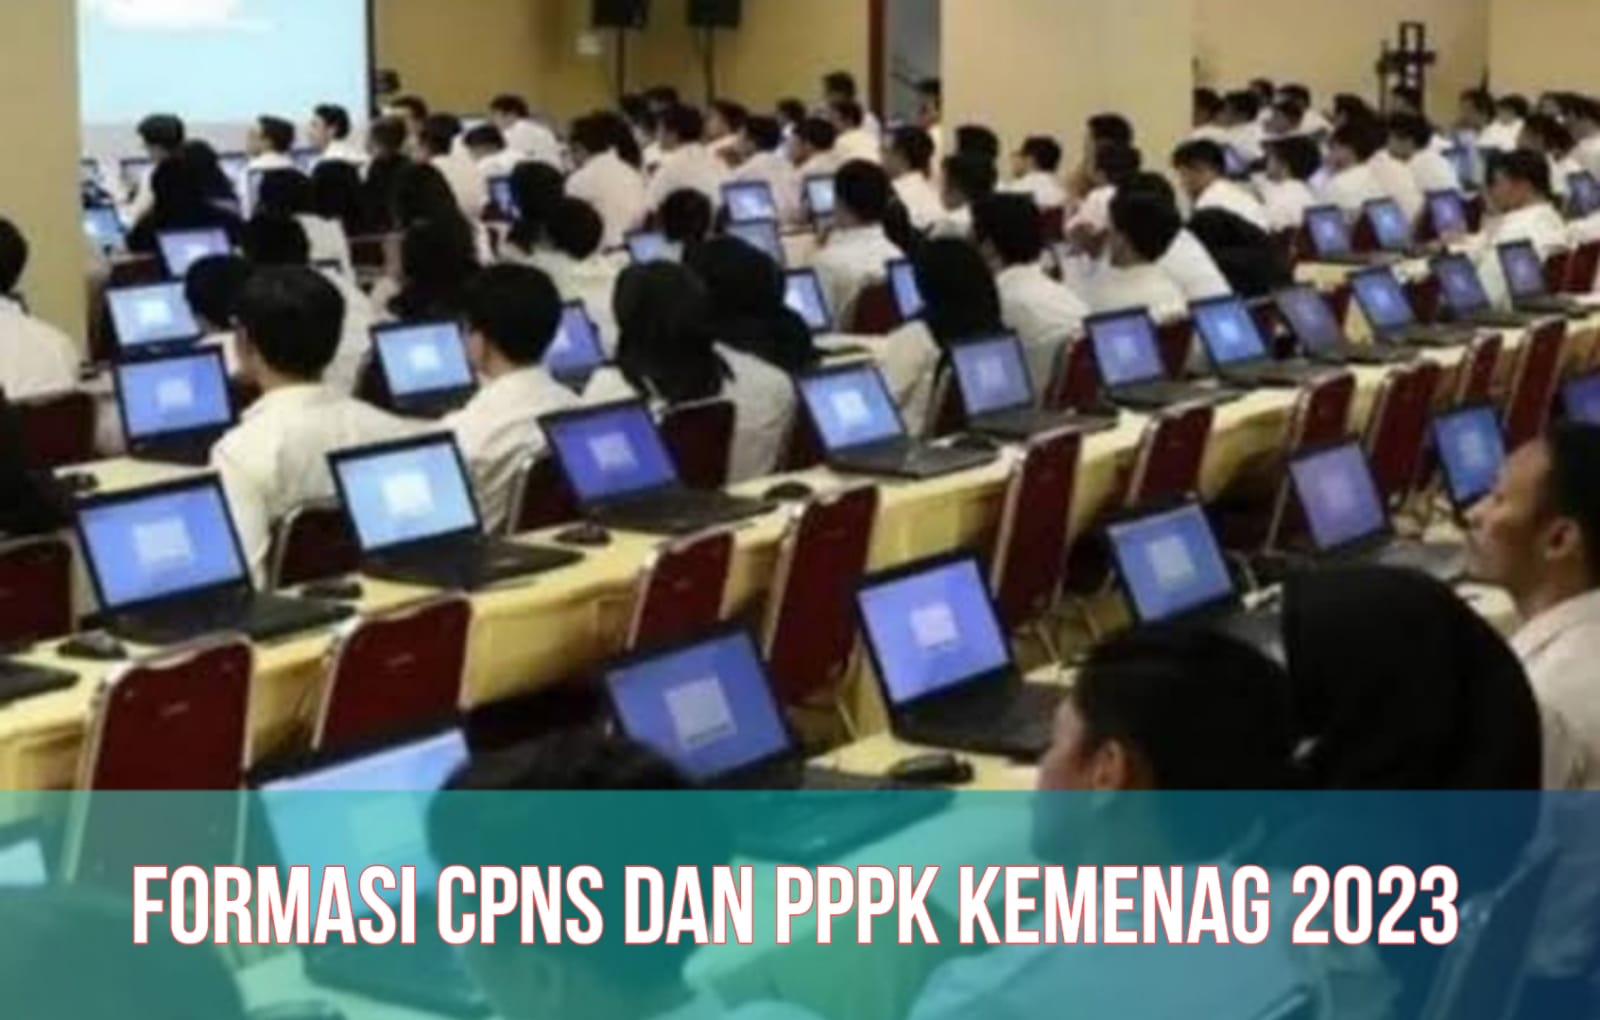 CPNS dan PPPK Kemenag 2023, Cek Rincian Formasi, Kriteria, hingga Syarat Daftarnya